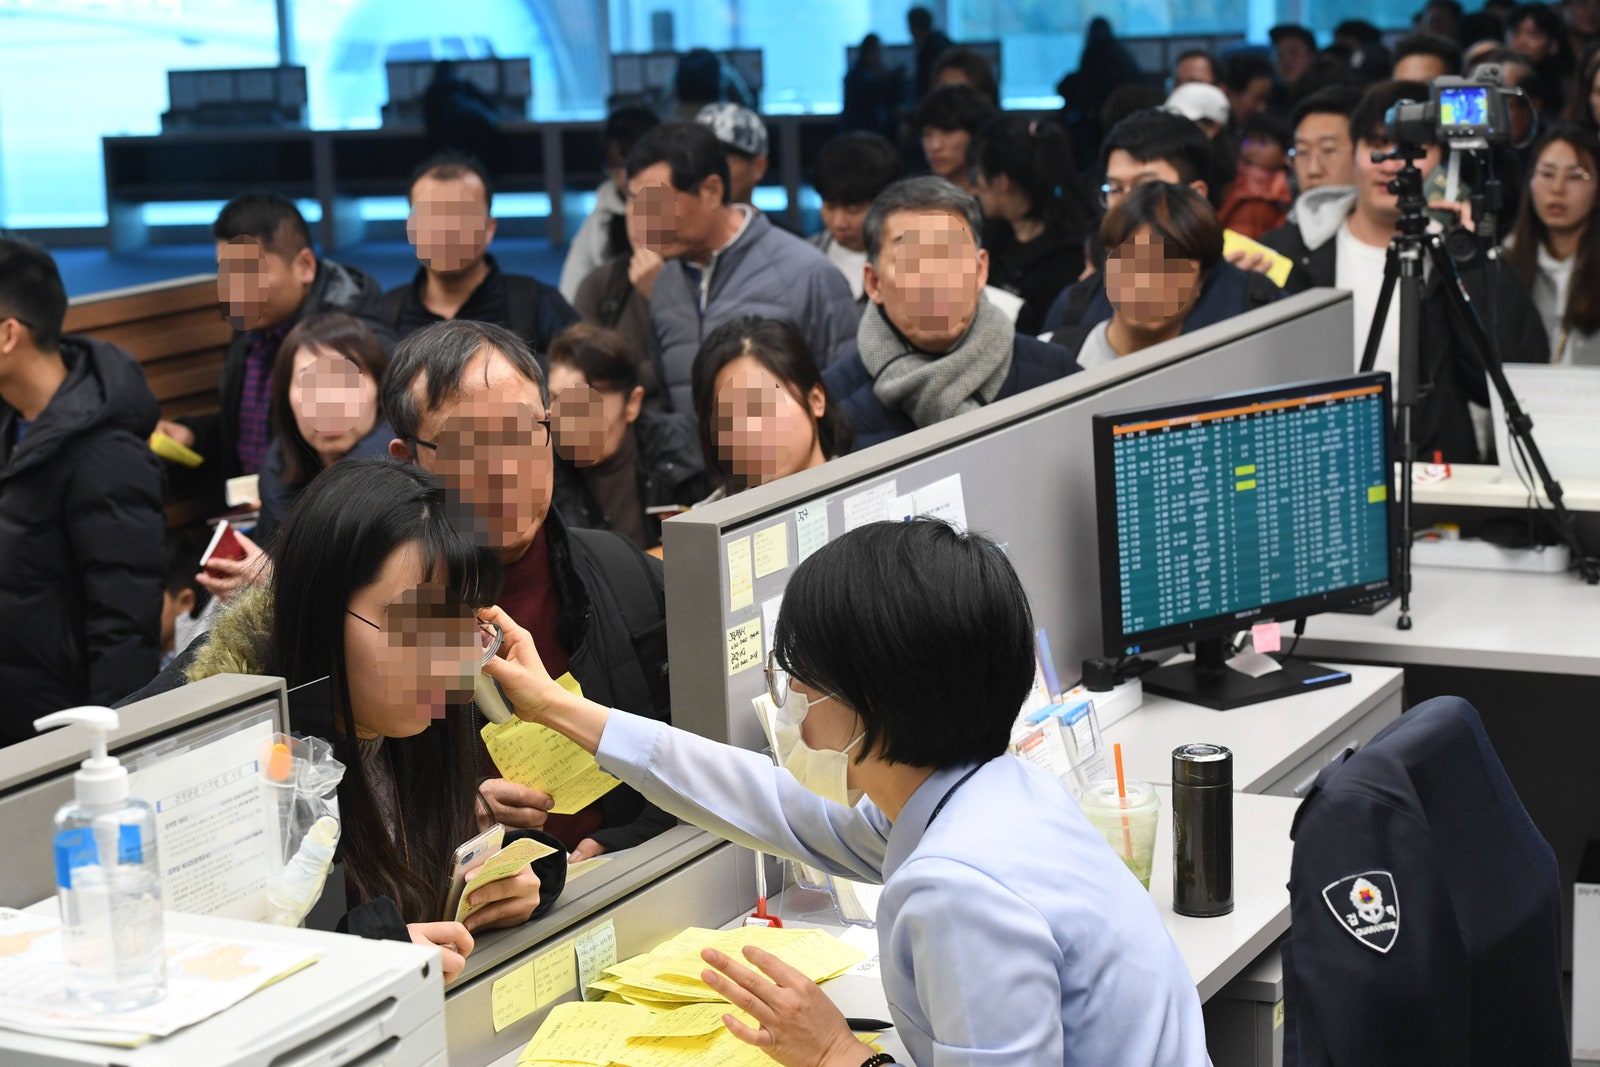 Проверка температуры прилетевших из Китая пассажиров сотрудниками аэропорта в Южной Корее.